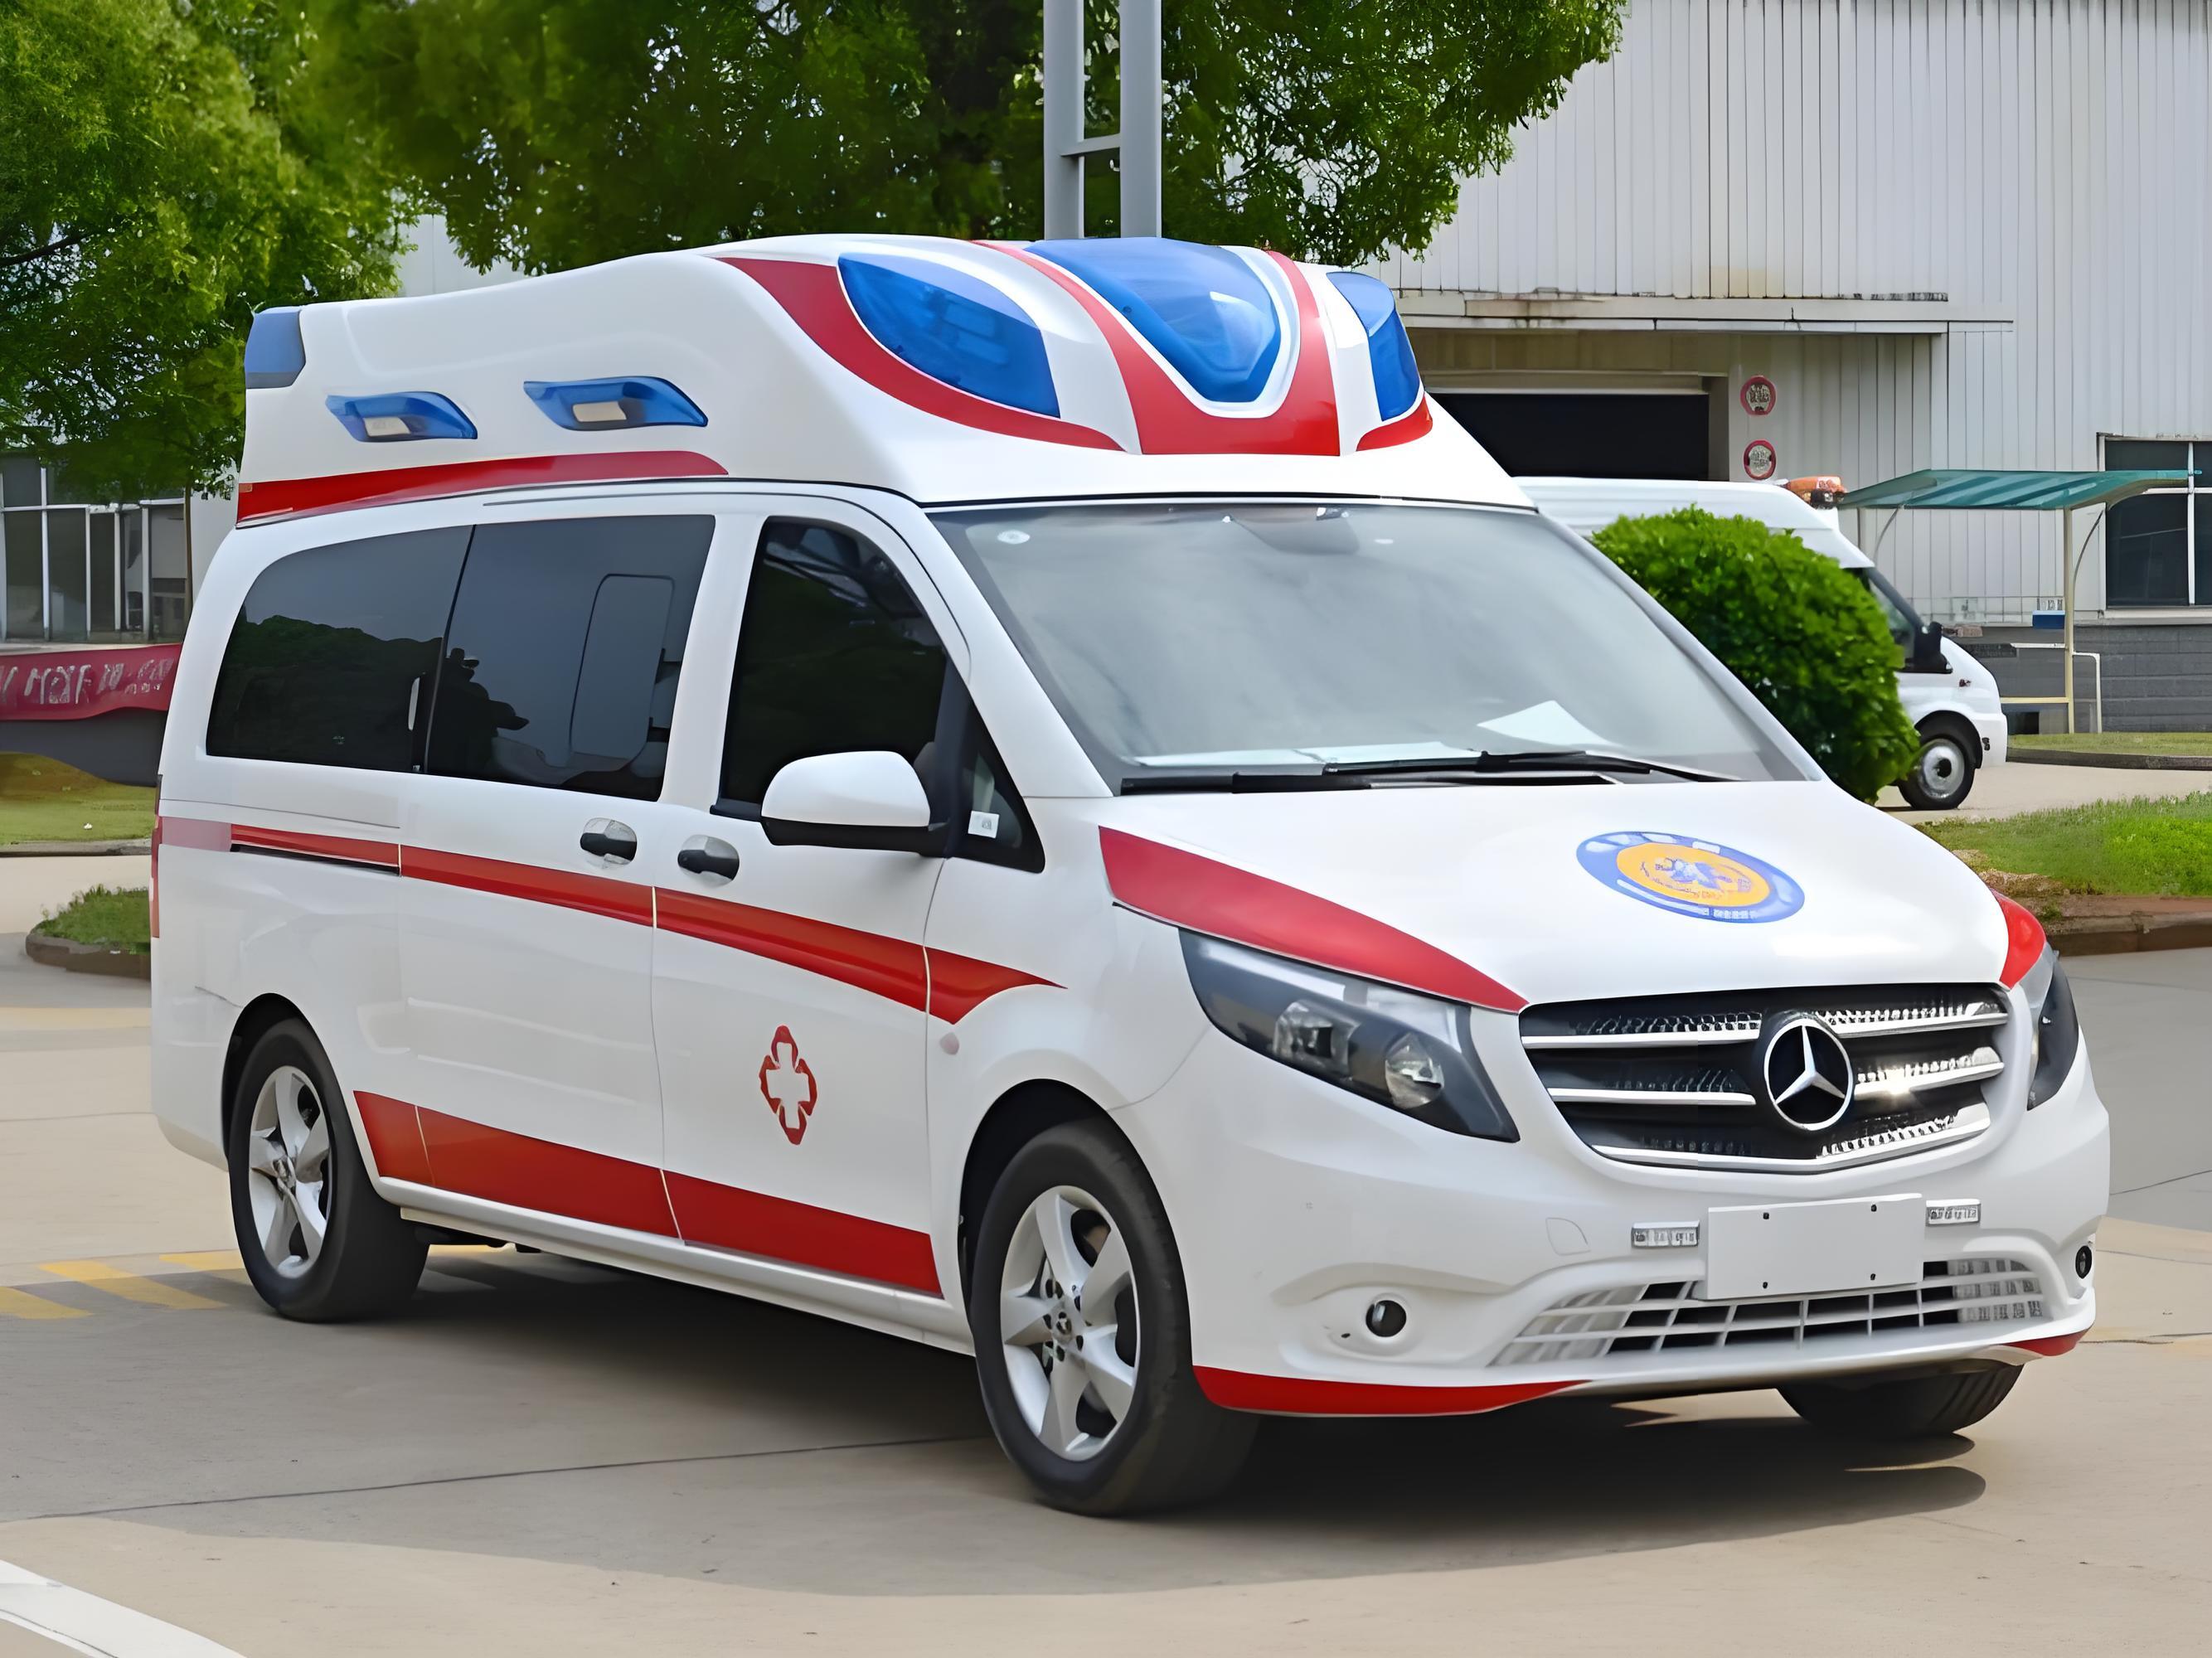 长沙救护车服务公司,长途转诊预约平台,可提前预约看车